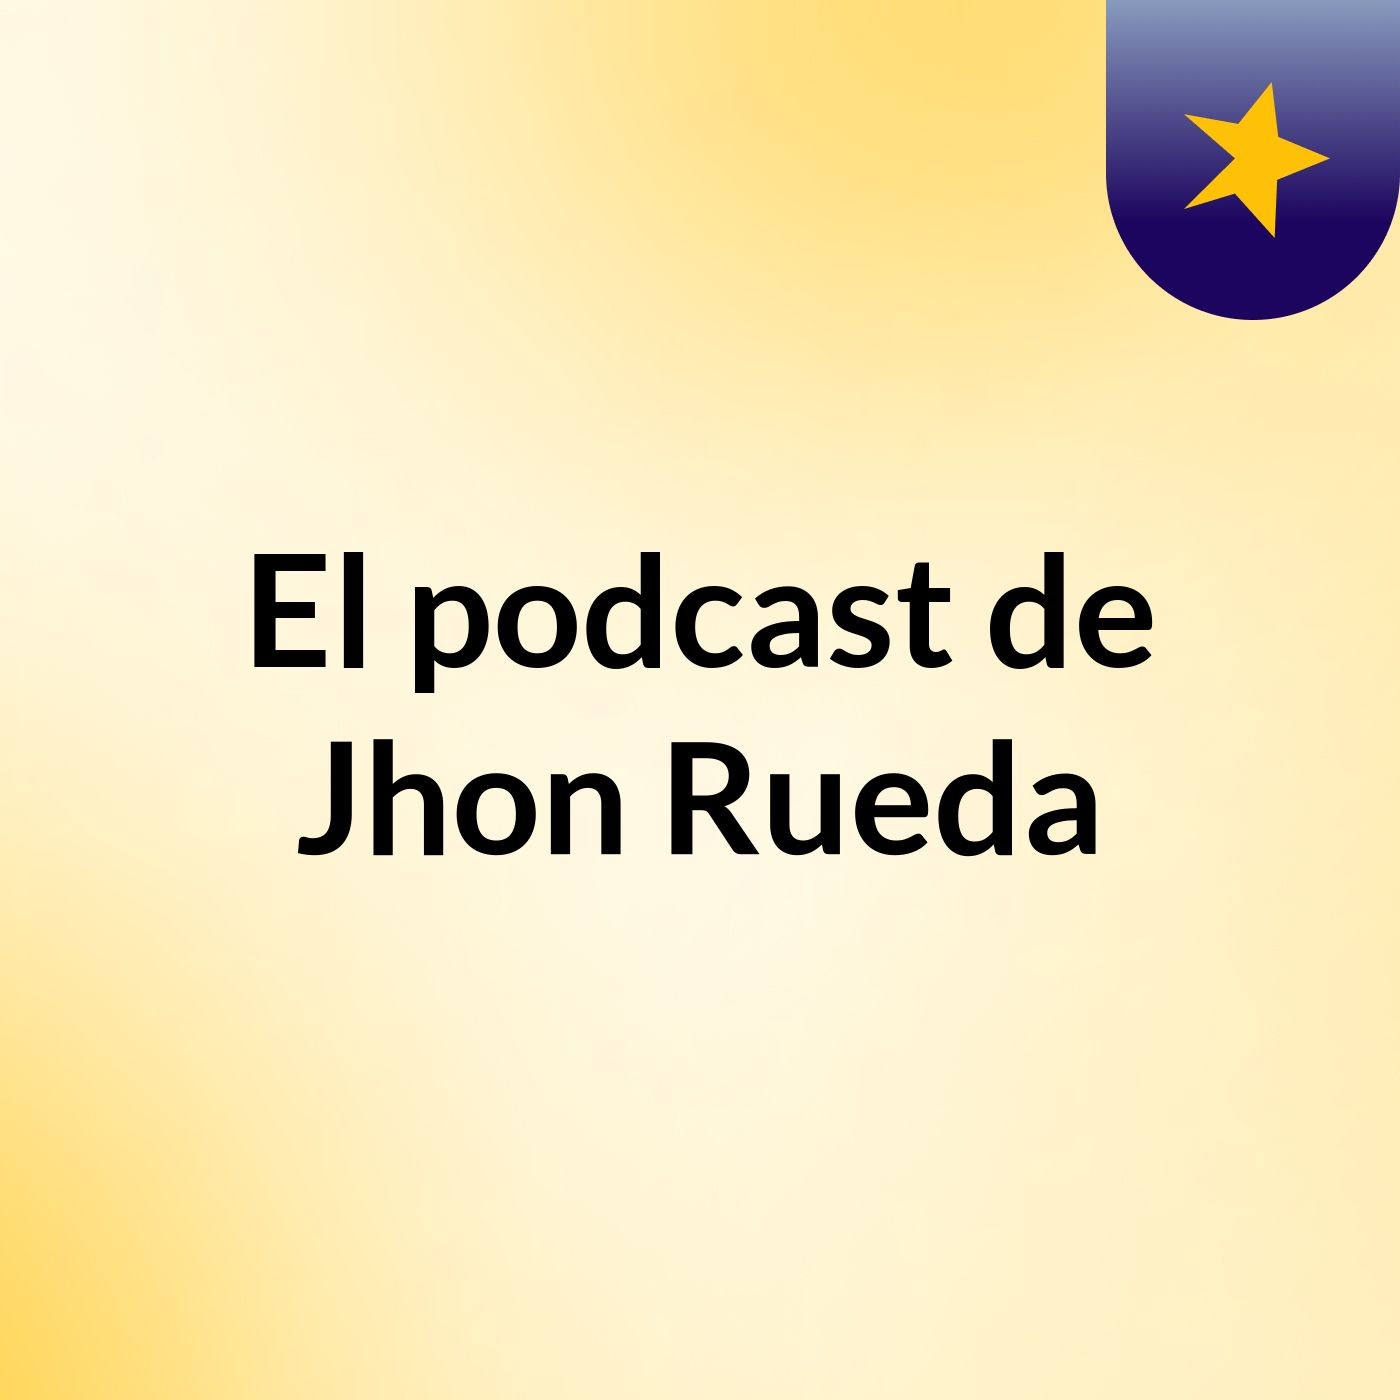 El podcast de Jhon Rueda